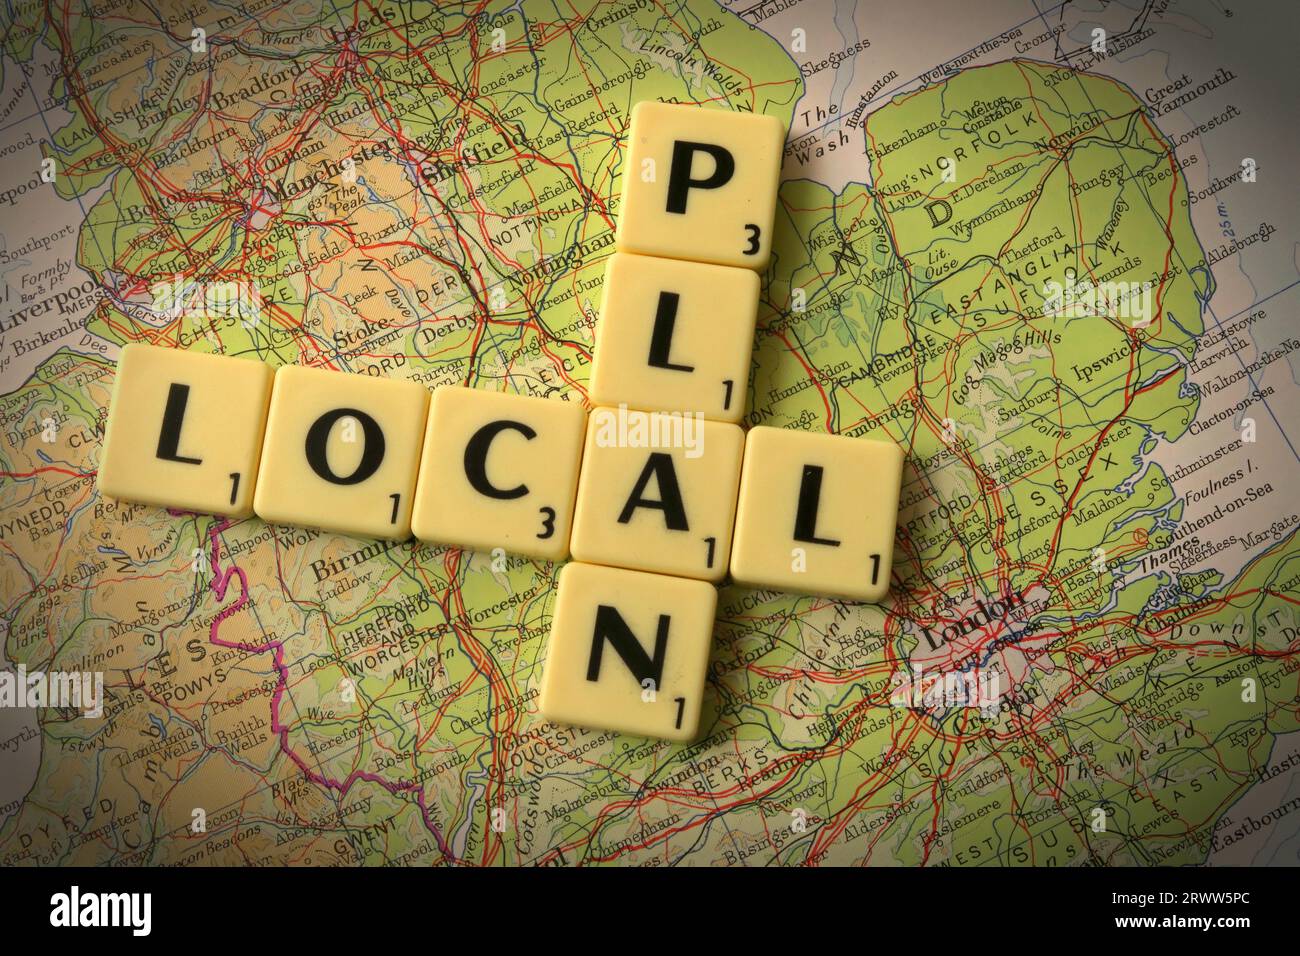 Local Plan in Scrabble Buchstaben und Worten auf einer Karte von England - lokale Entwicklung und Gebäudekontrolle Stockfoto